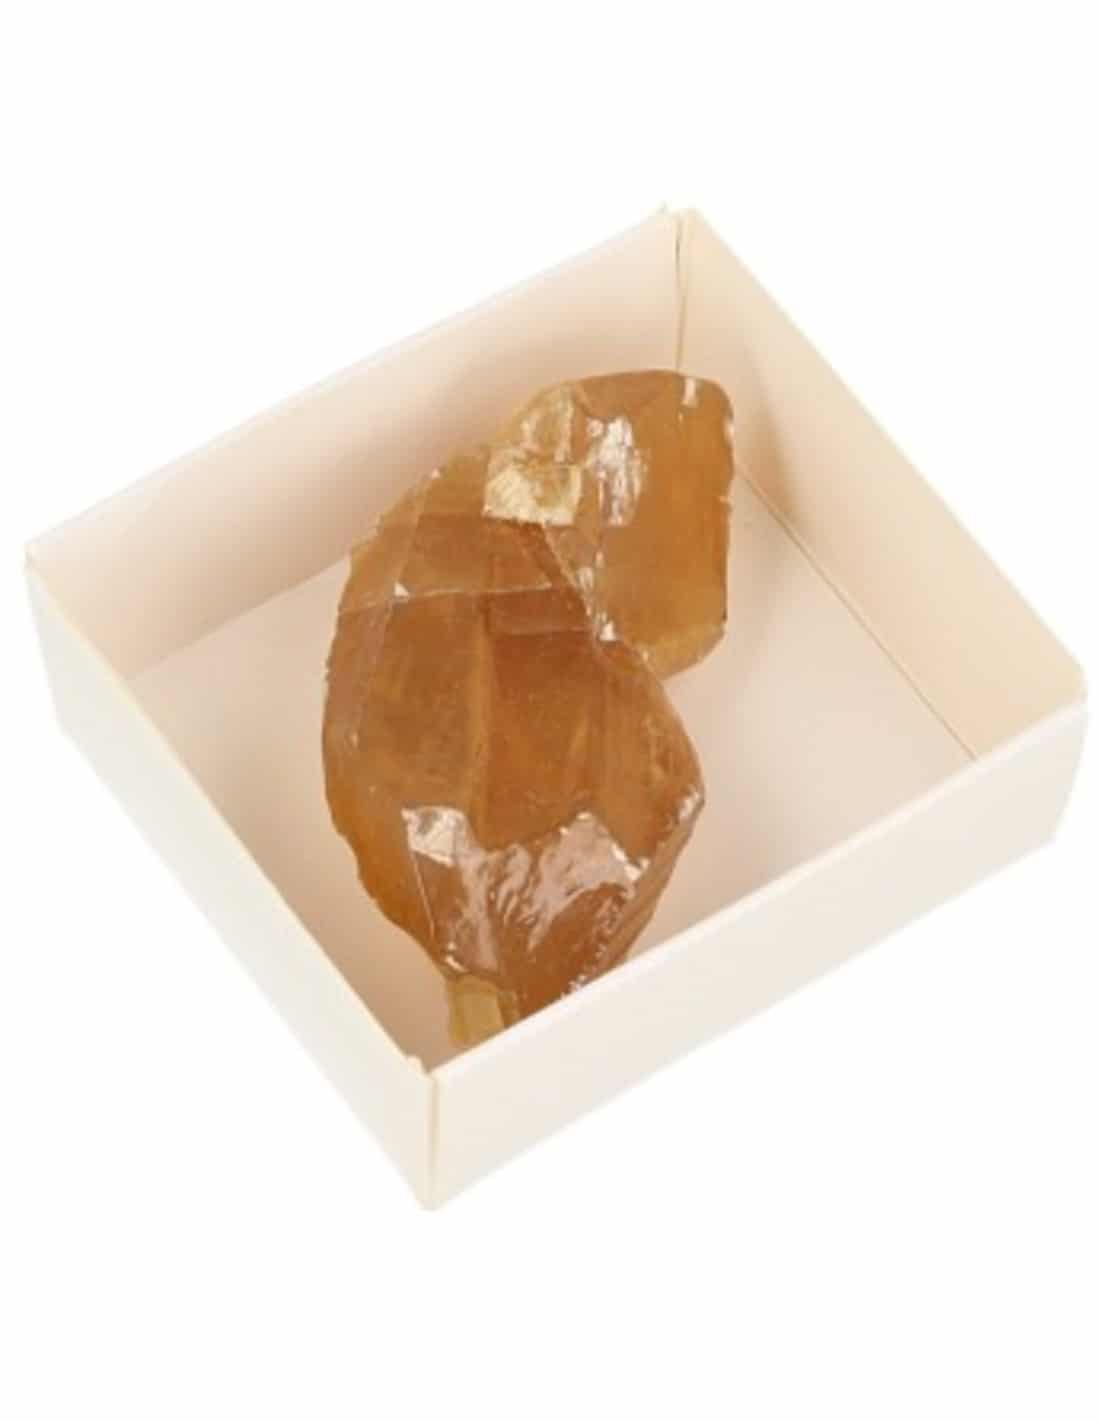 Schachtel Roher Edelstein Calcit Honig unter Edelsteine & Mineralien - Edelstein Arten - Rohe Edelsteine